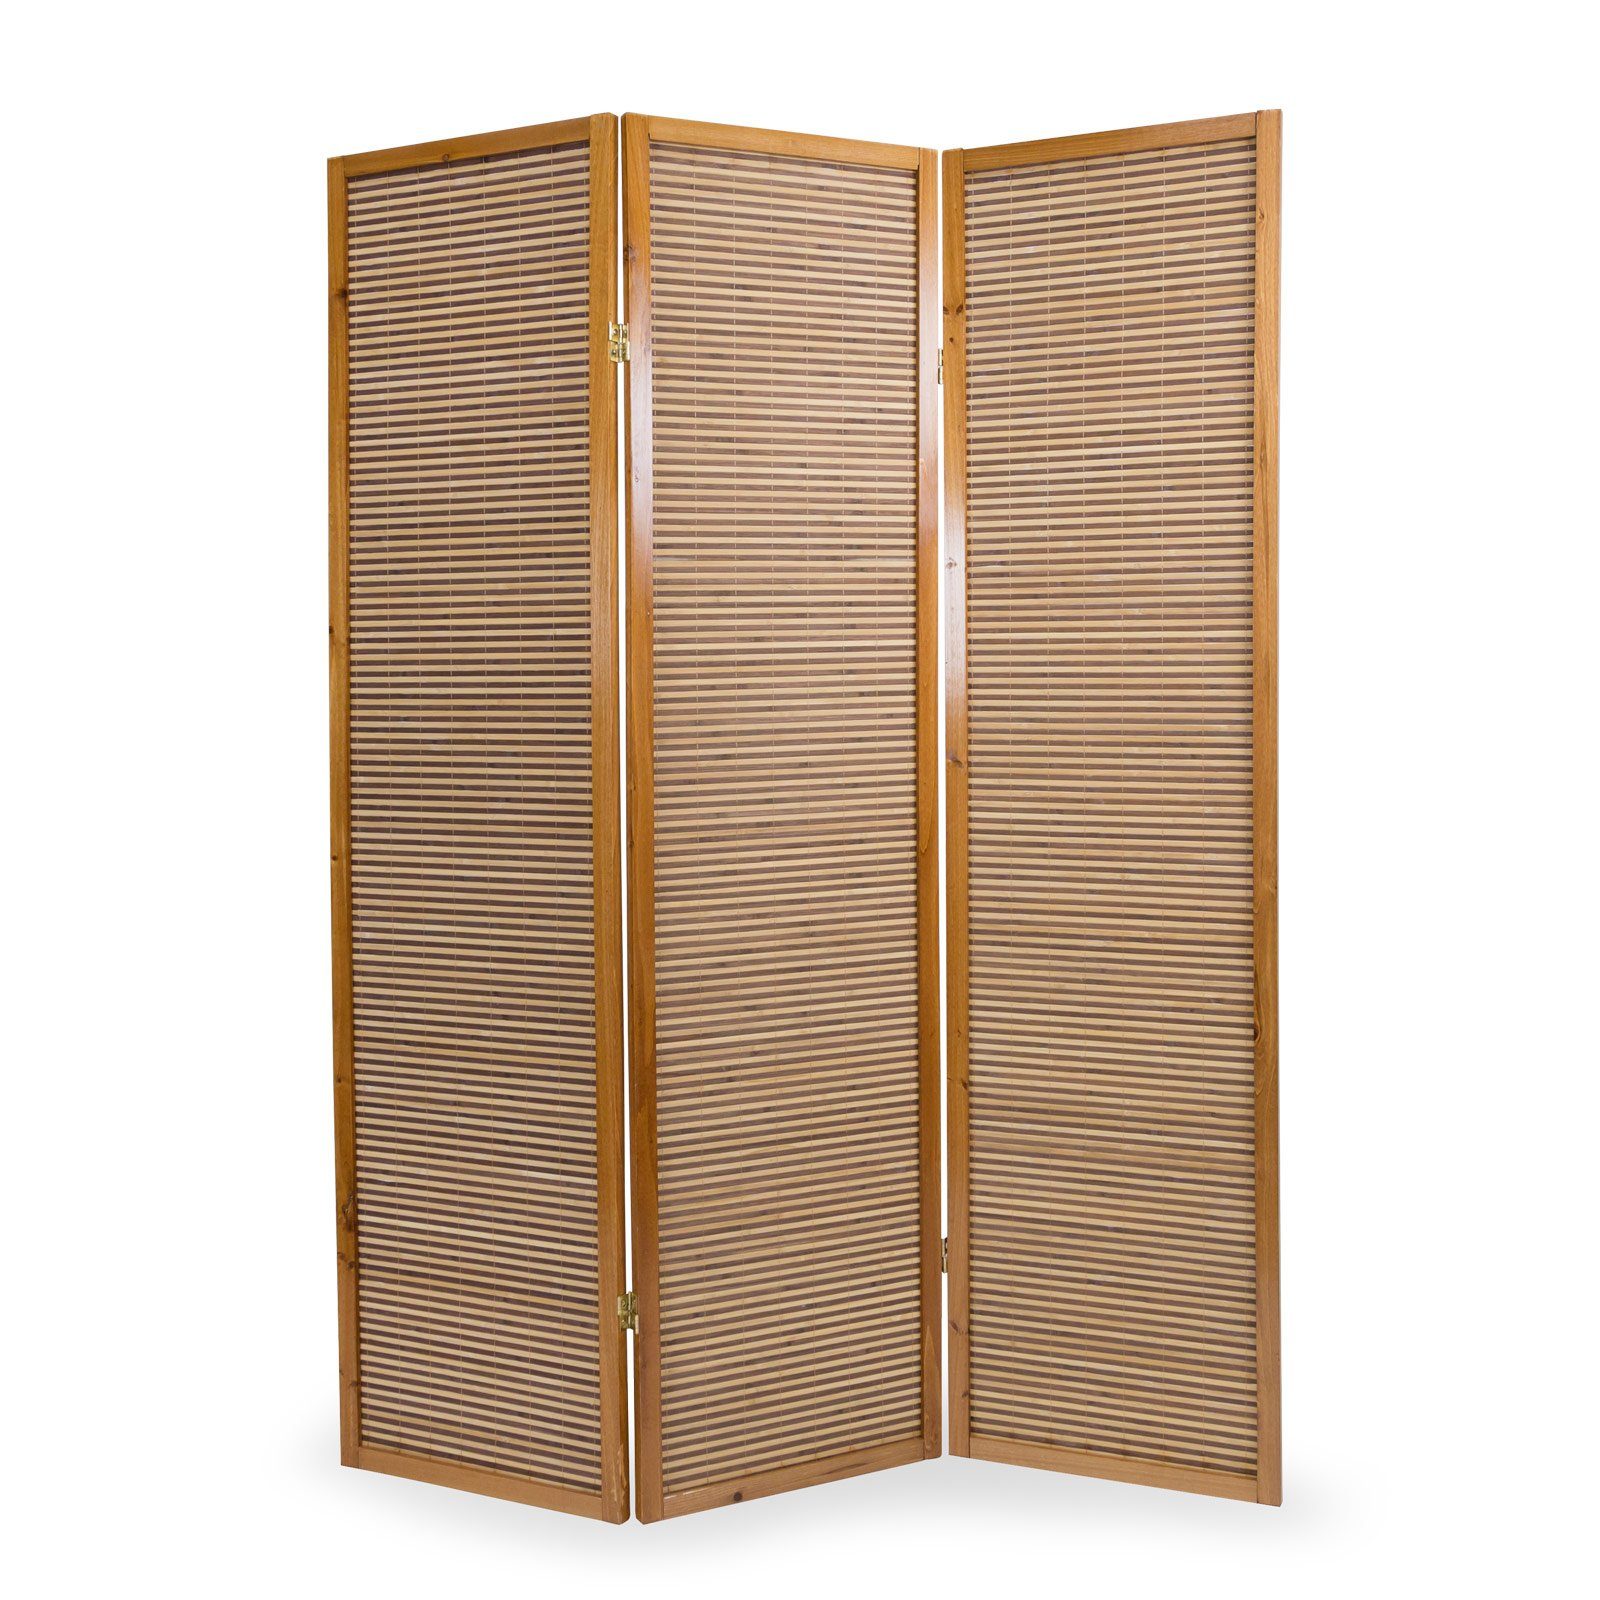 Homestyle4u Paravent Sichtschutz Holz Raumteiler Bambus Braun Indoor, 3-teilig